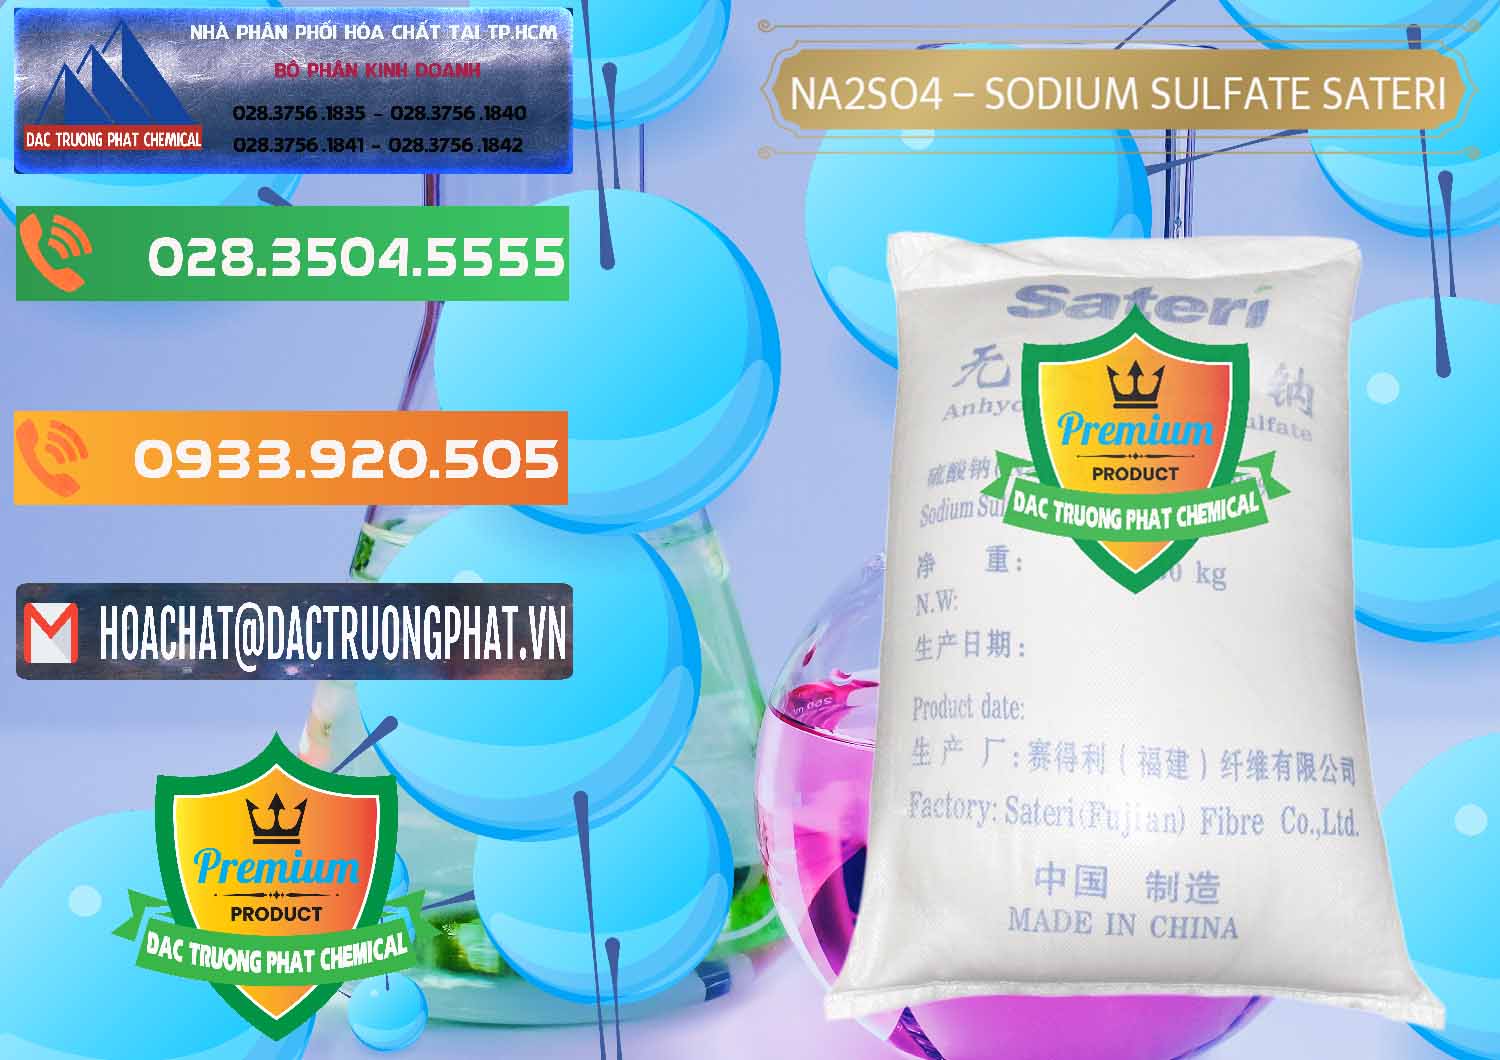 Cty chuyên bán & cung ứng Sodium Sulphate - Muối Sunfat Na2SO4 Sateri Trung Quốc China - 0100 - Đơn vị chuyên nhập khẩu và cung cấp hóa chất tại TP.HCM - hoachatxulynuoc.com.vn